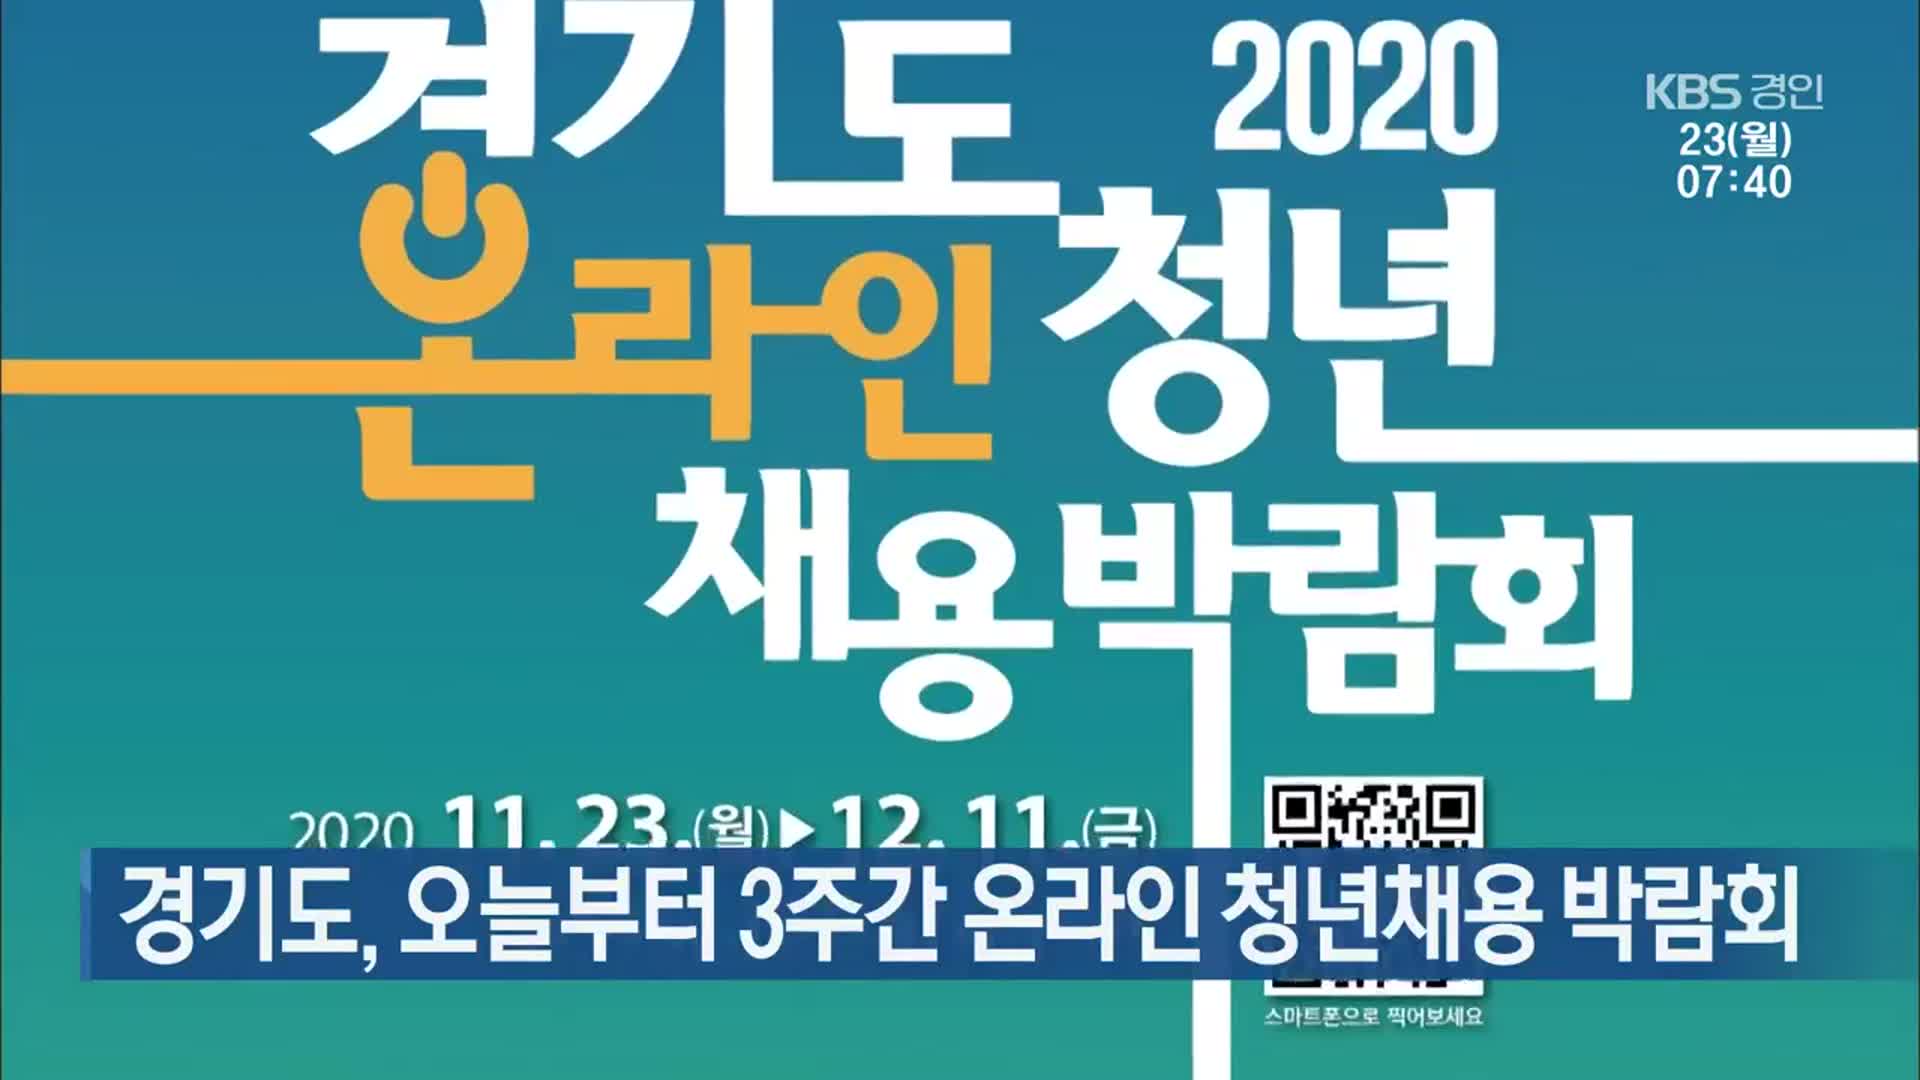 경기도, 오늘부터 3주간 온라인 청년채용 박람회